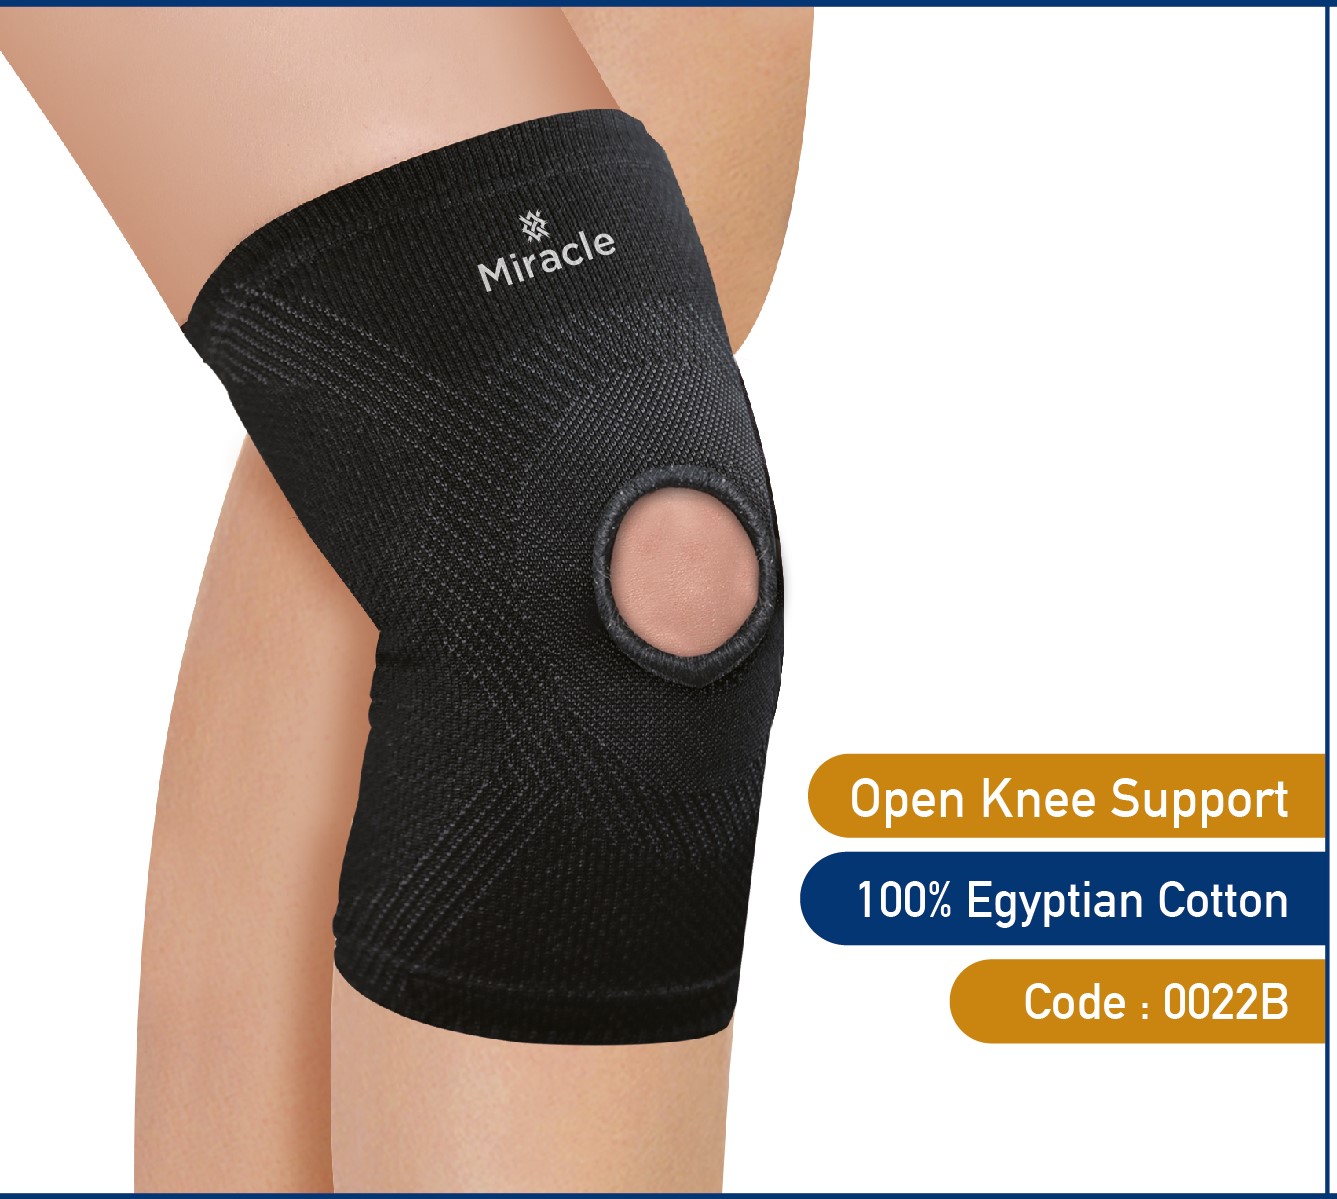 Open knee support